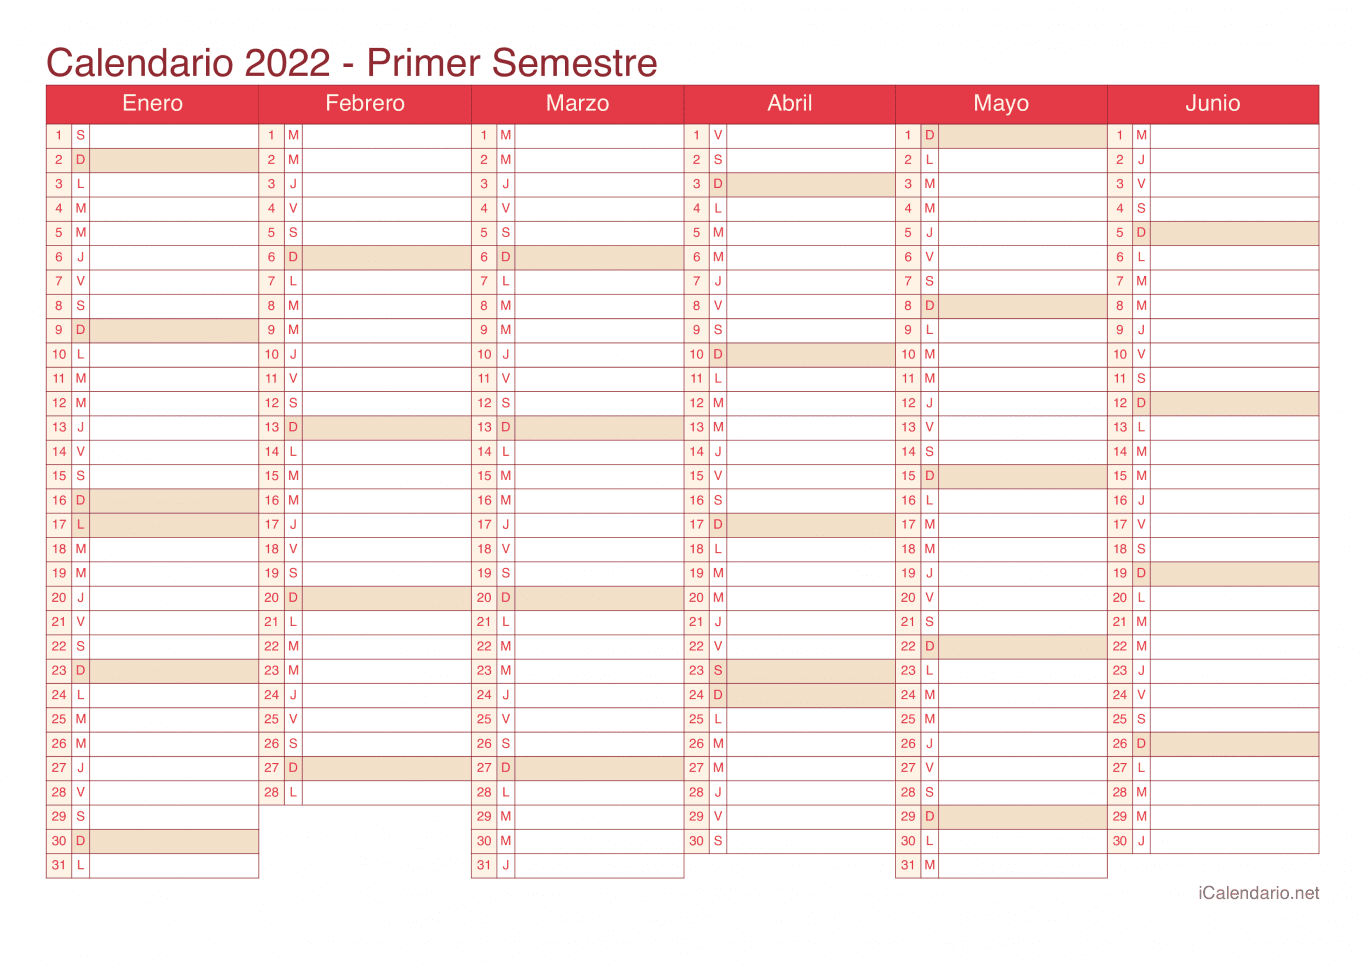 Calendario por semestre 2022 - Cherry